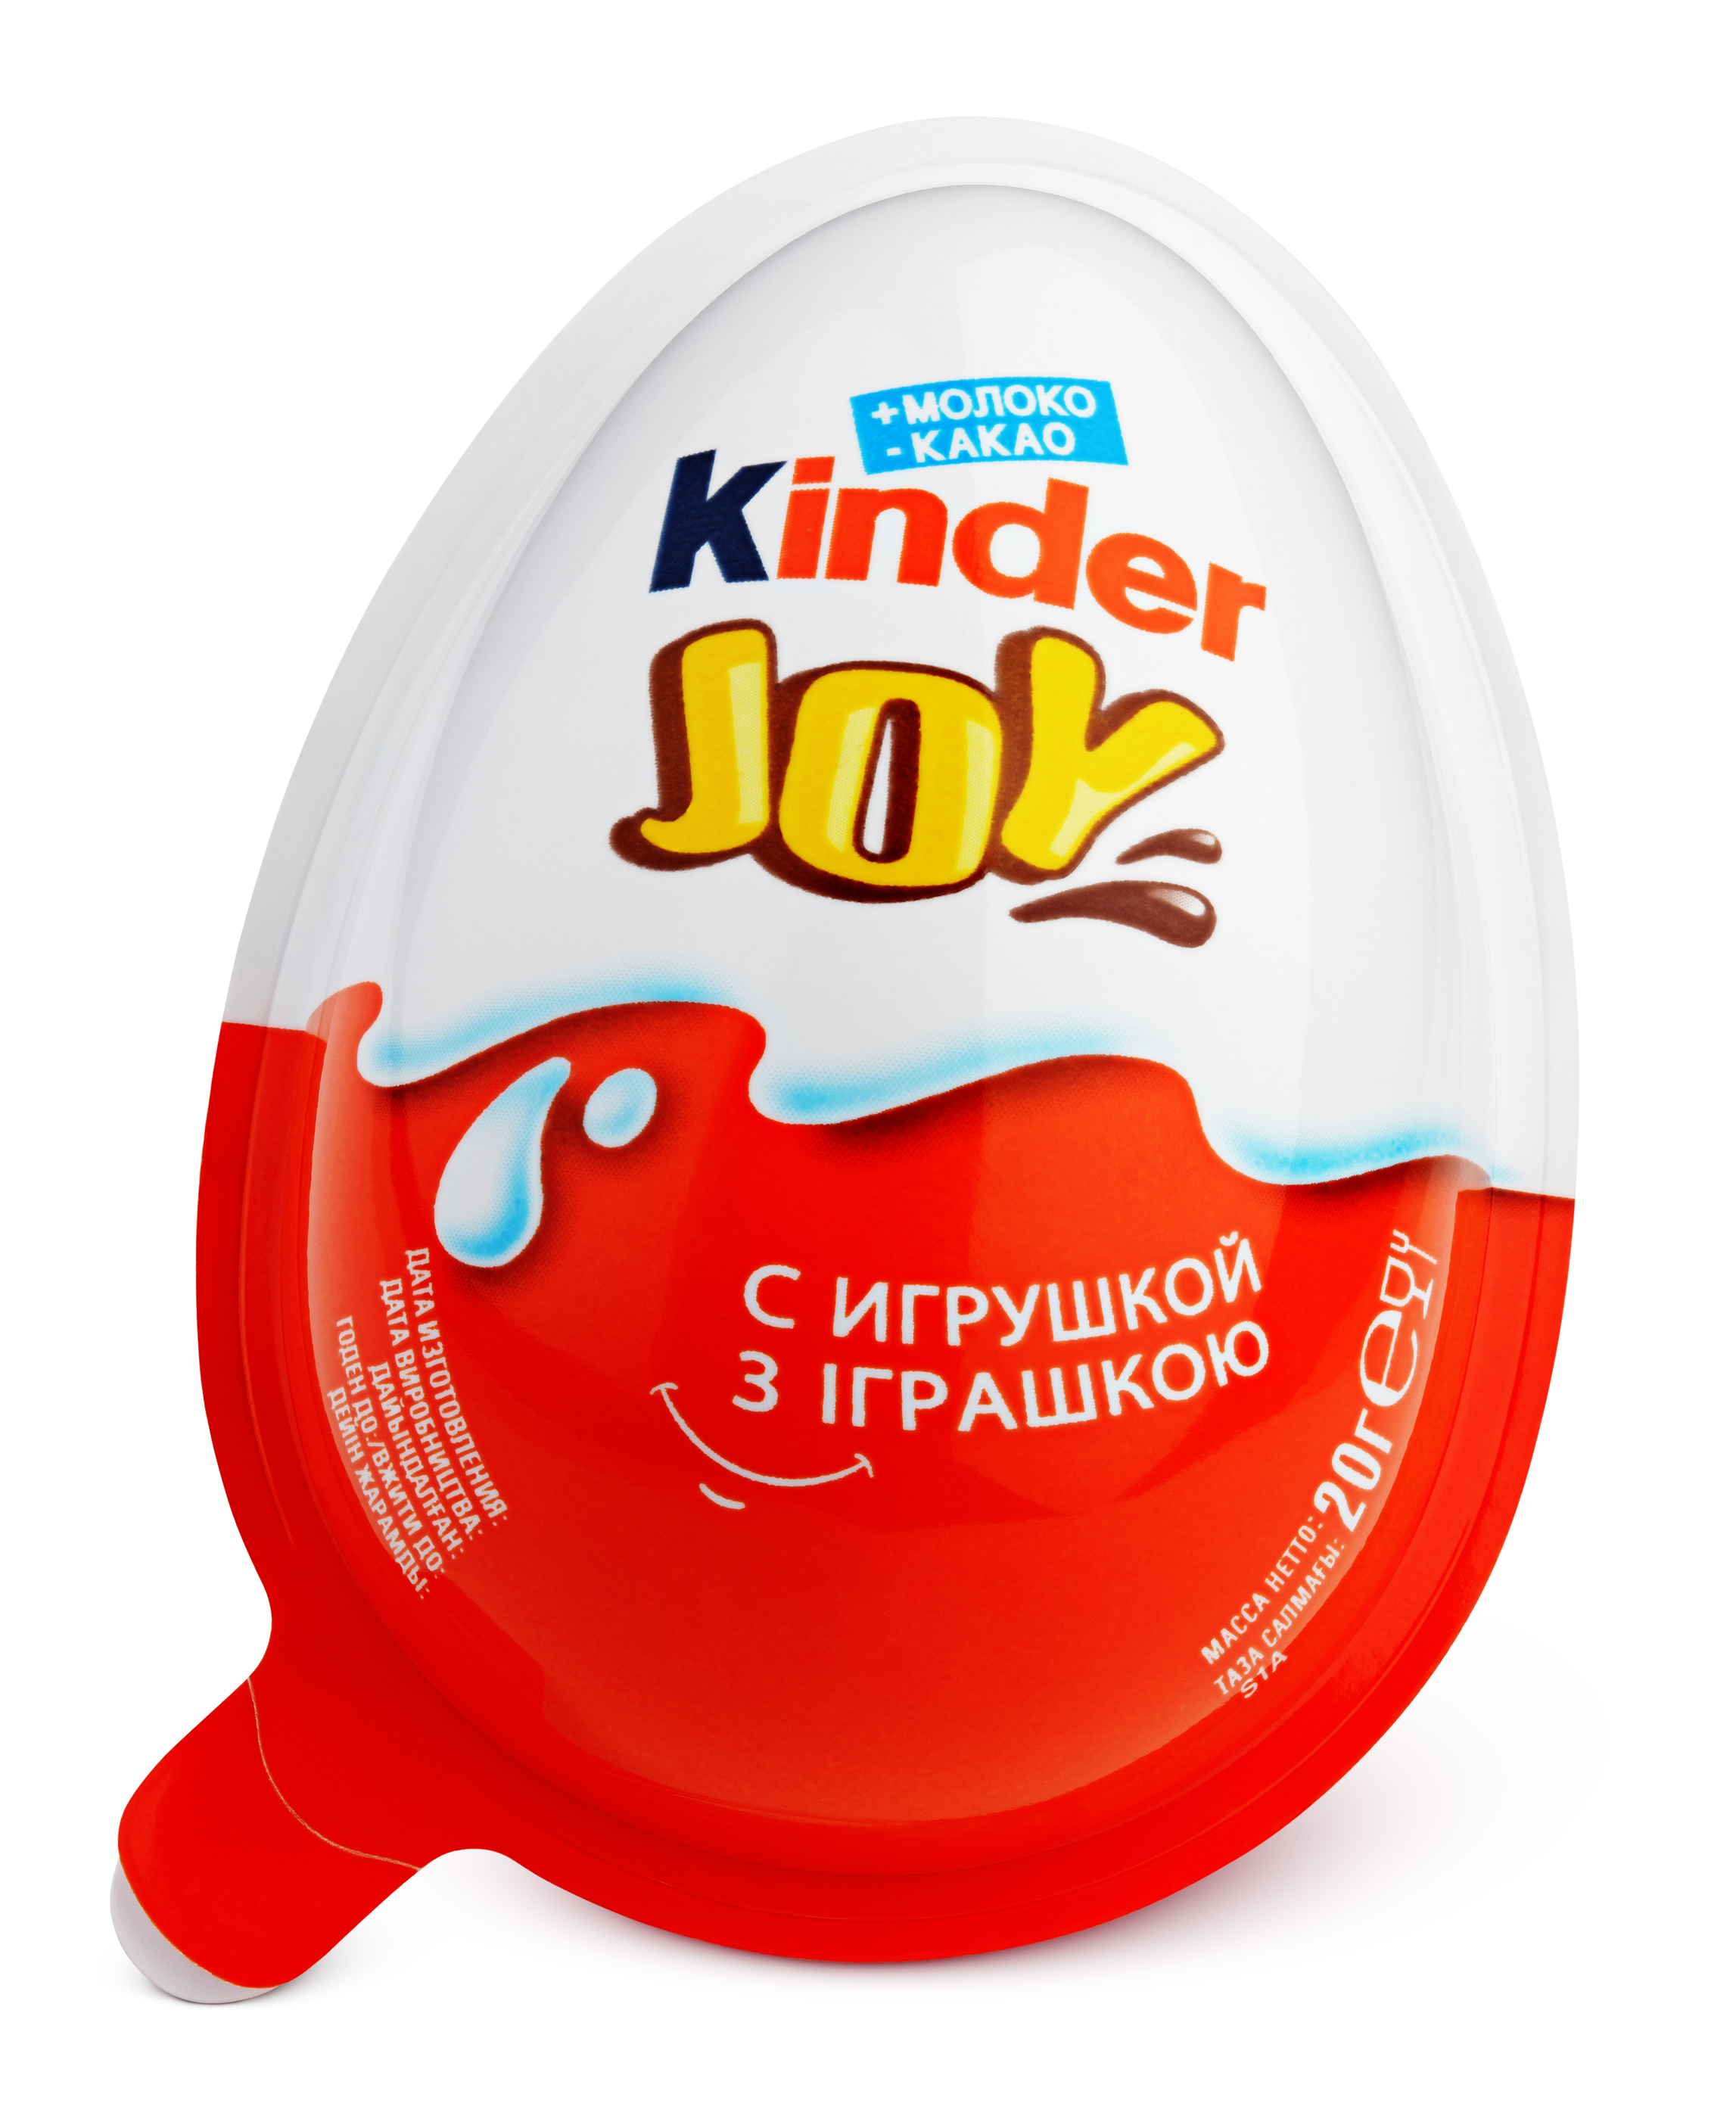 german kinder eggs for sale